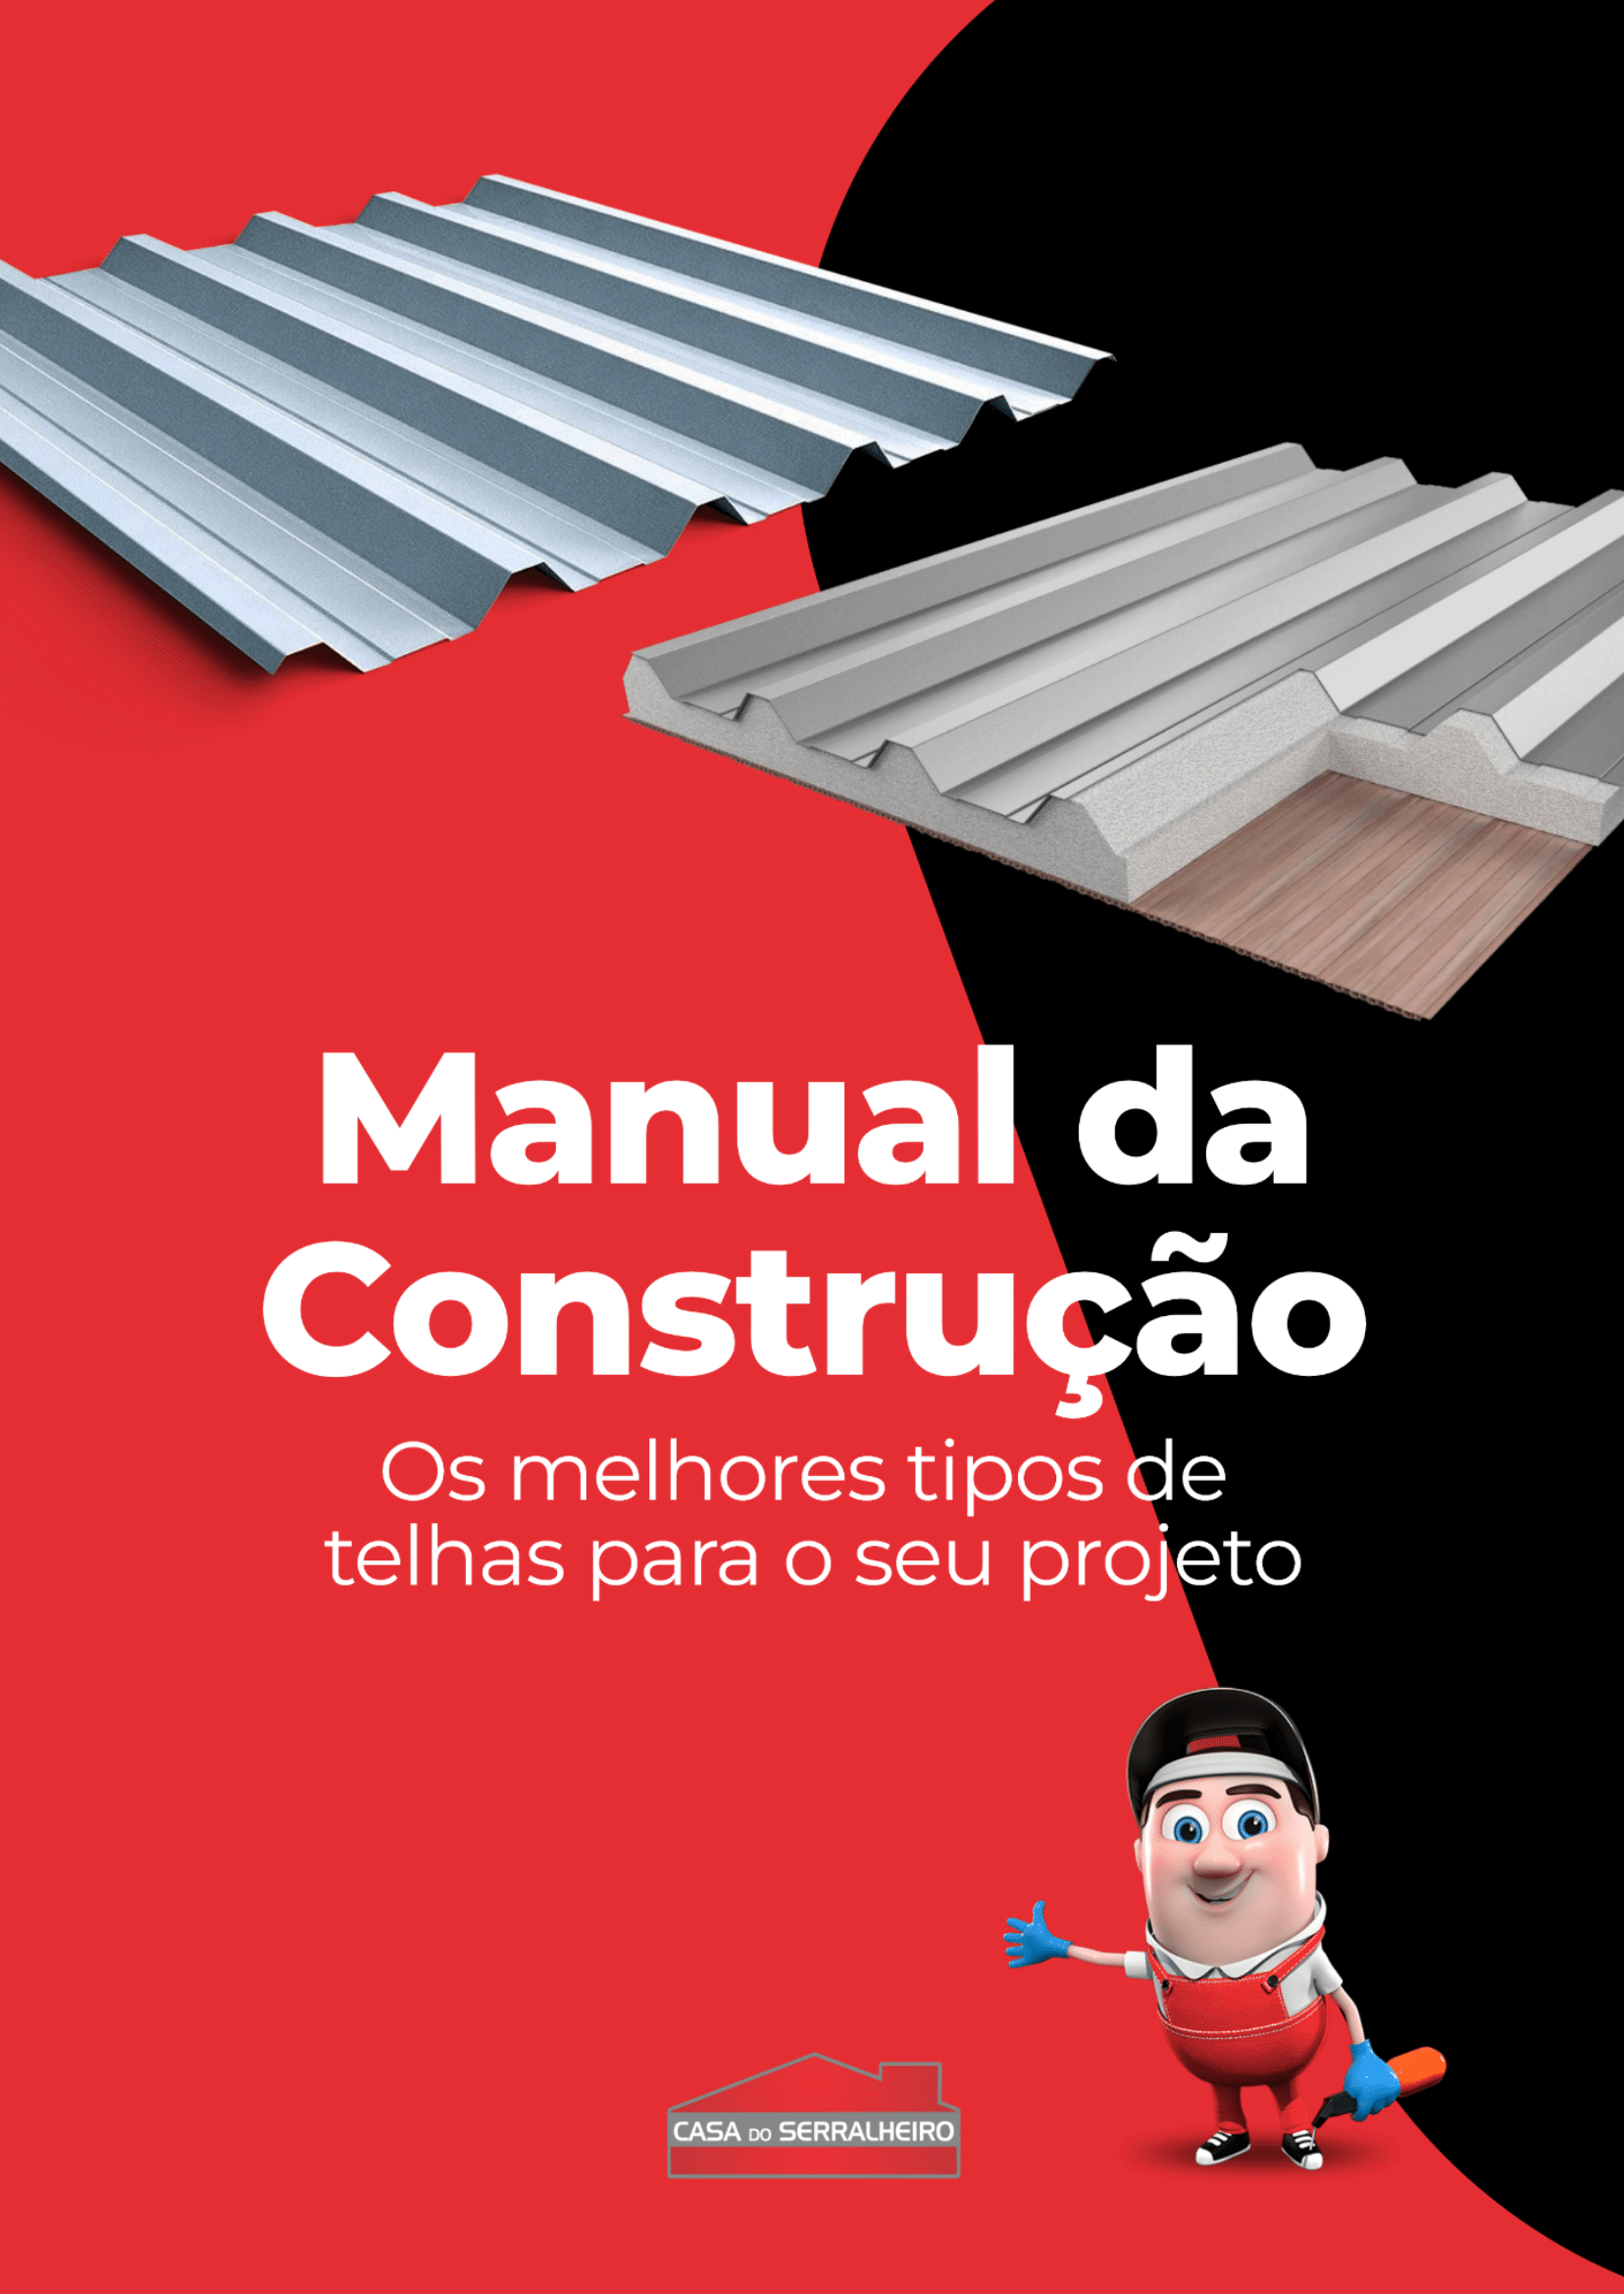 Casa do Serralheiro Materiais Ebooks Os melhores tipos de telhas para o seu projeto